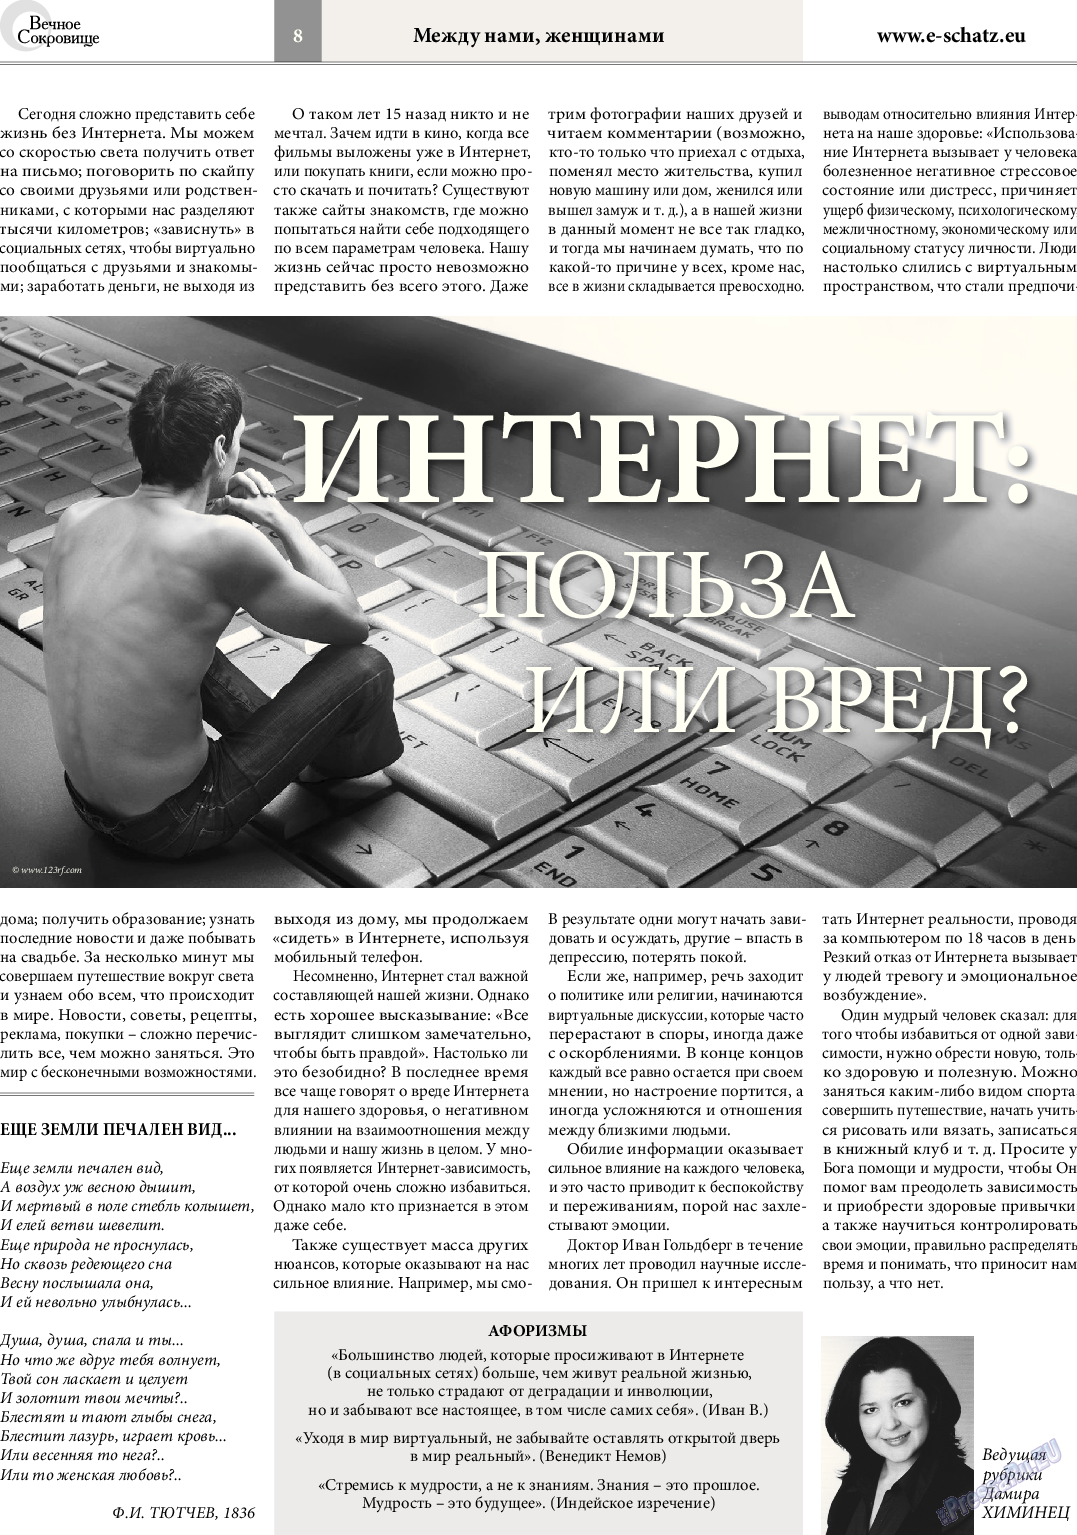 Вечное сокровище (газета). 2014 год, номер 2, стр. 8